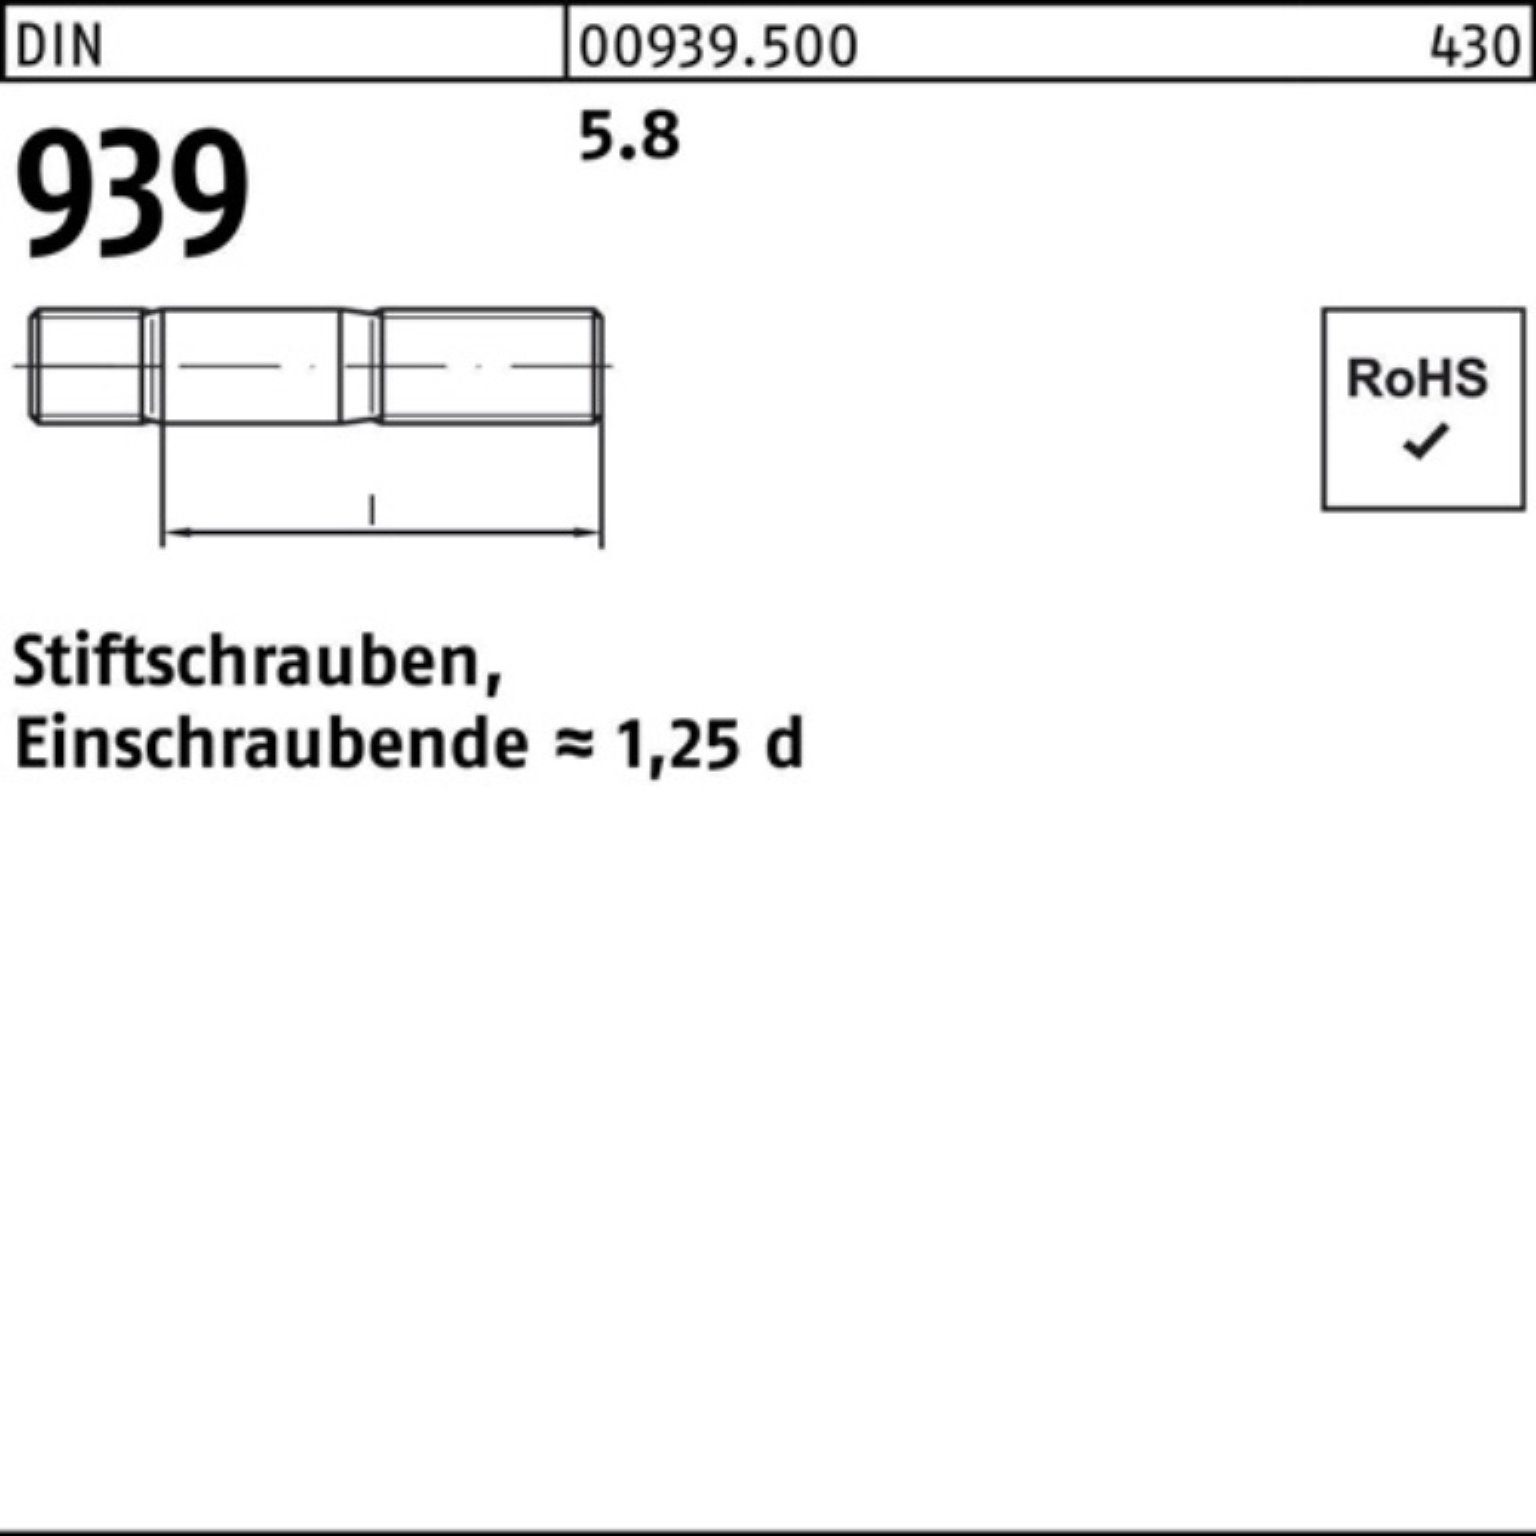 Reyher Stiftschraube 100er Pack Stiftschraube DIN 5.8 939 120 Einschraubende=1,25d M12x 25